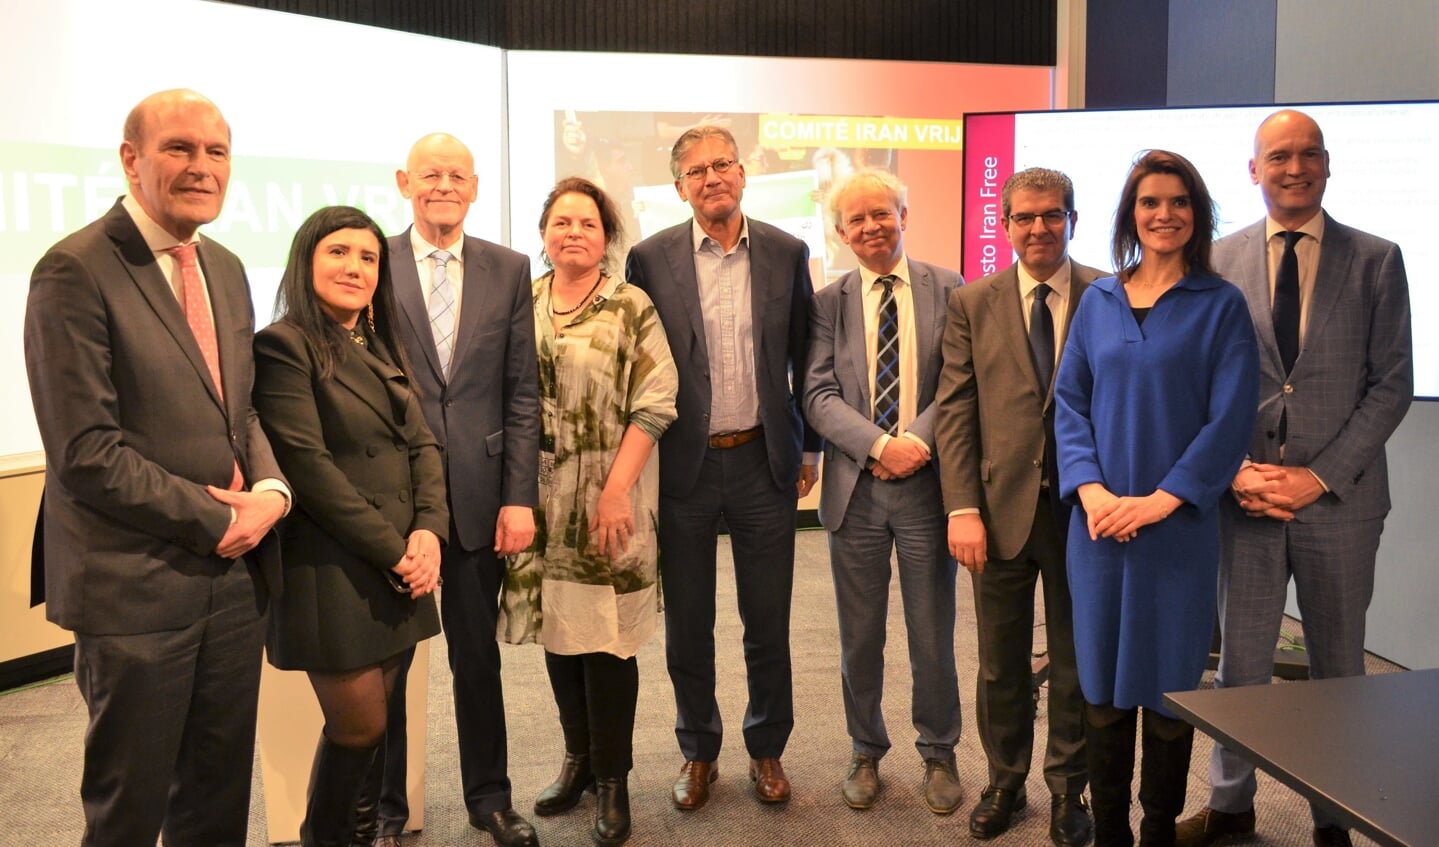 Leden van het Comité Iran Vrij bij de presentatie in Den Haag, woensdag.